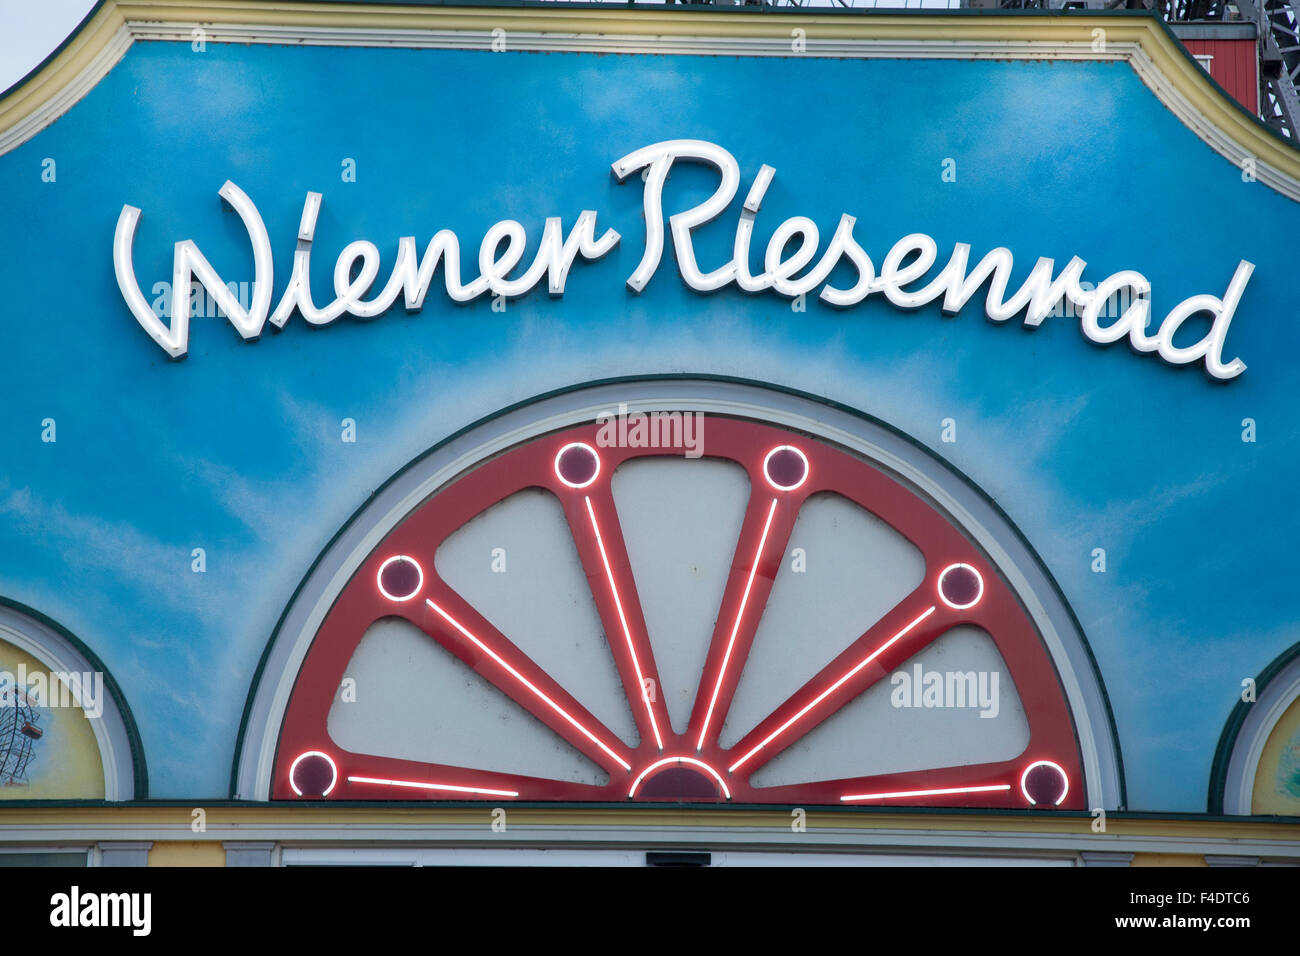 Wiener Riesenrad - Grande Roue, Vienne, Autriche Banque D'Images